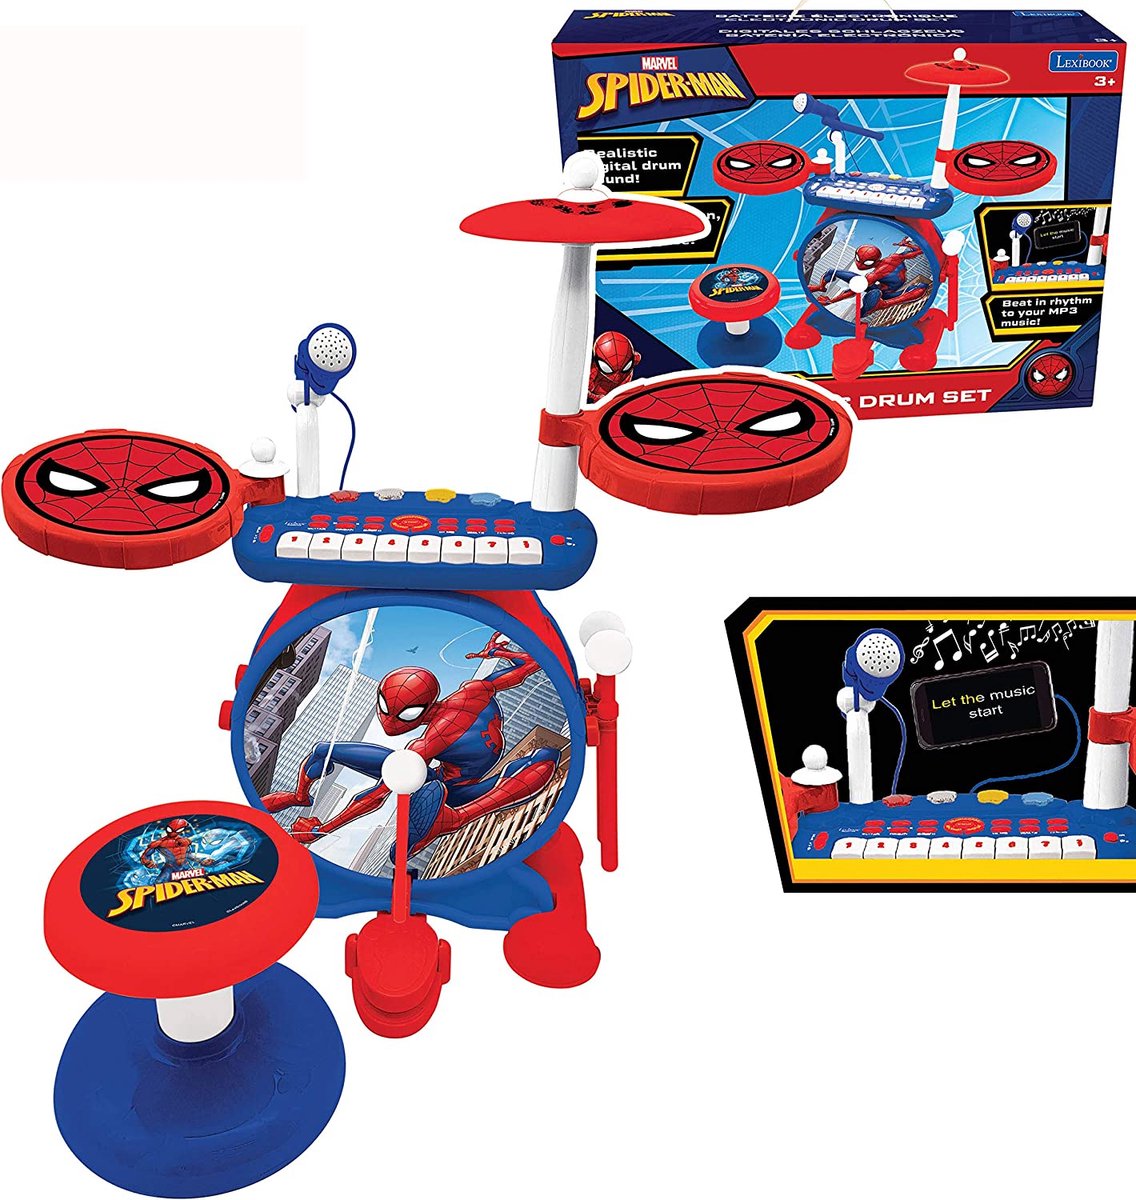 Lexibook Spider-Man Elektronische Drumkit voor kinderen, realistisch drumgeluid, 8-toetsen toetsenbord, mp3-stekker, inclusief stoel, blauw/rood, K610SP